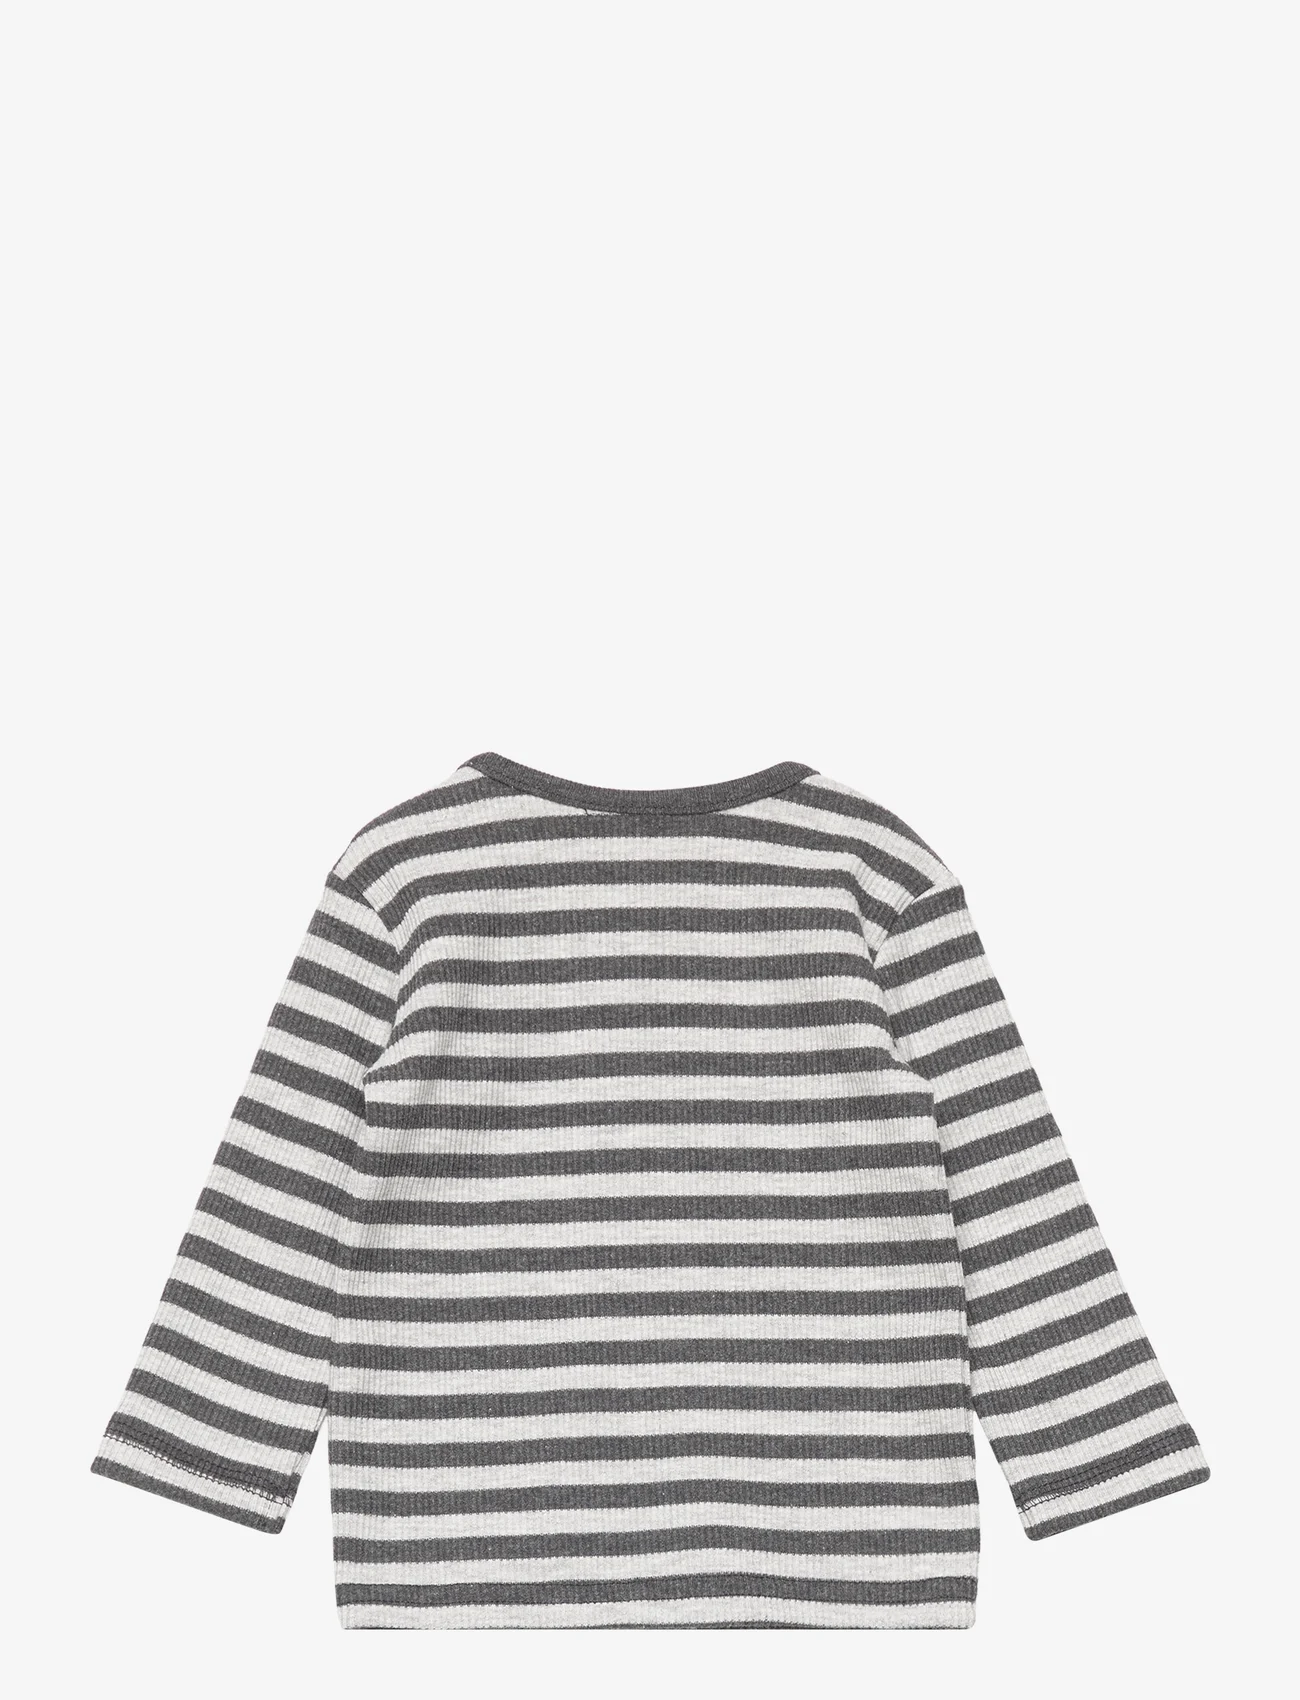 Noa Noa miniature - T-shirt - dlugi-rekaw - light/dark grey melange - 1